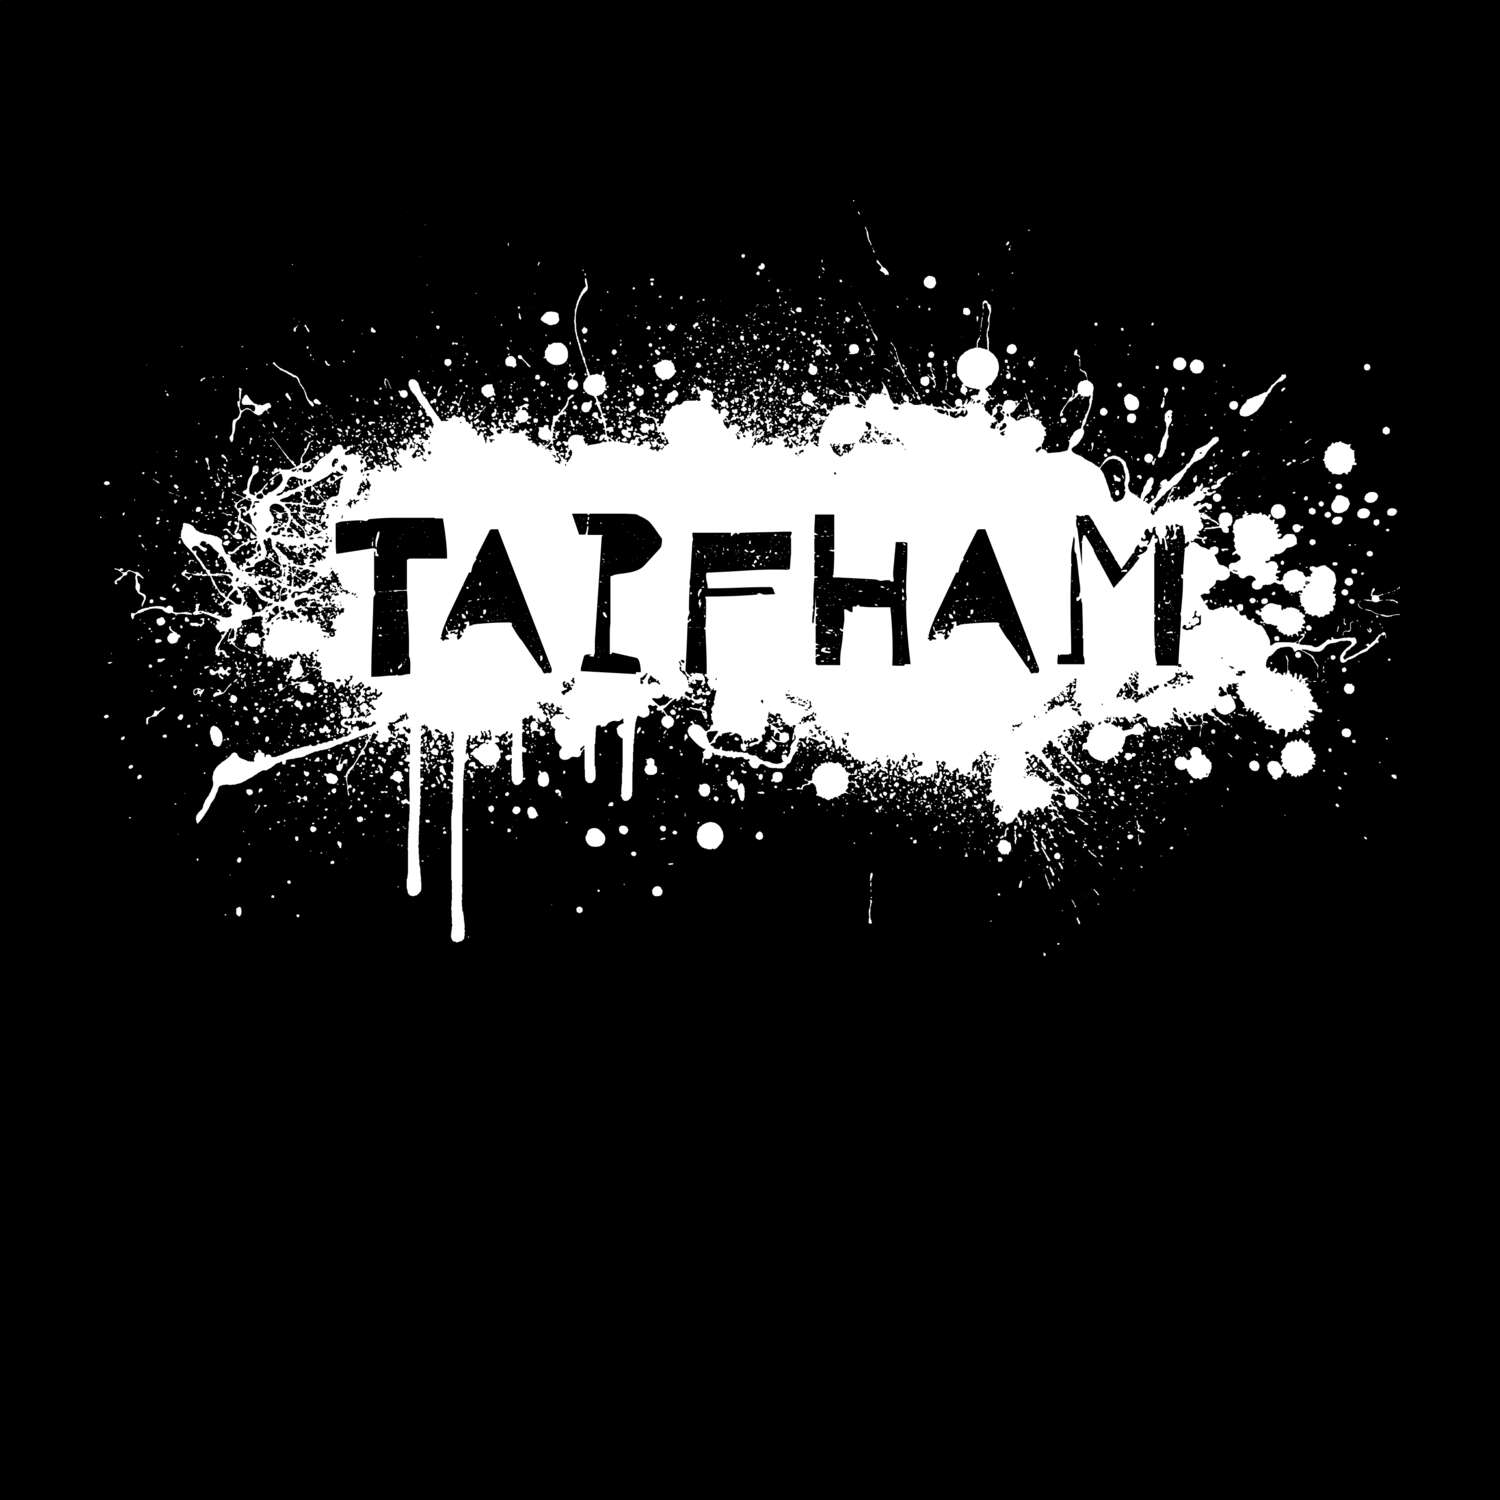 Tapfham T-Shirt »Paint Splash Punk«